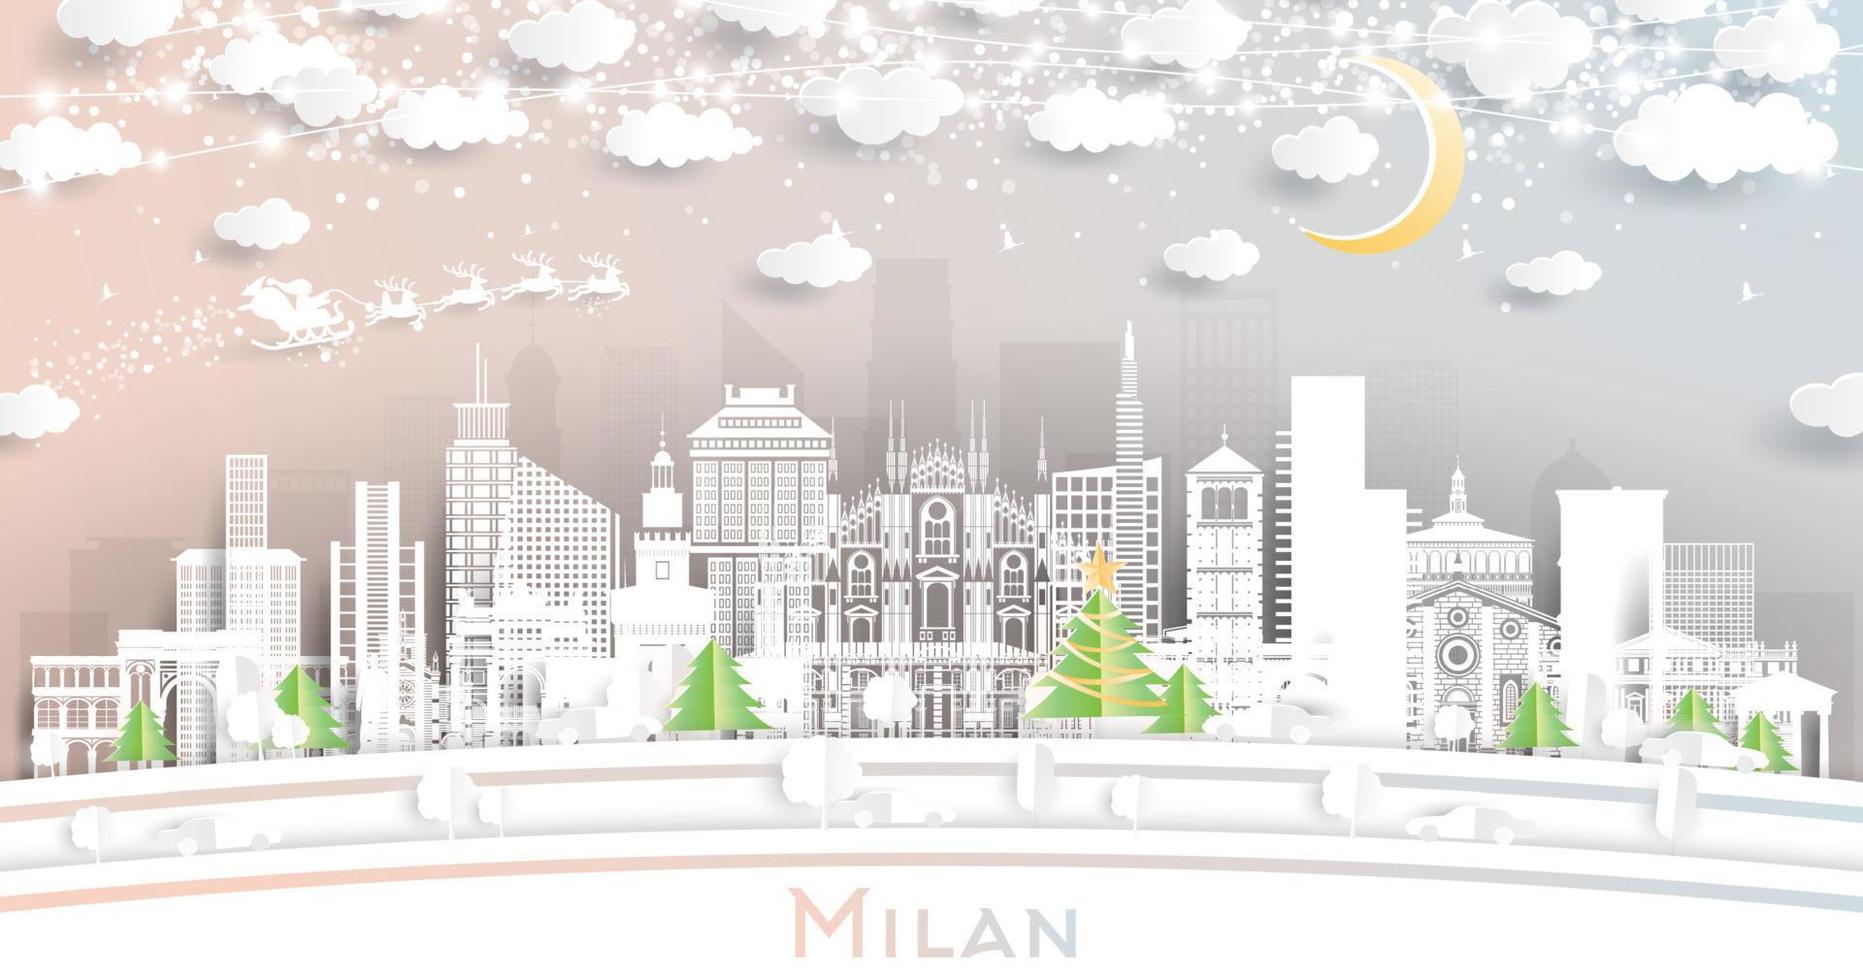 Milaan Italië stad horizon in papier besnoeiing stijl met sneeuwvlokken, maan en neon guirlande. vector